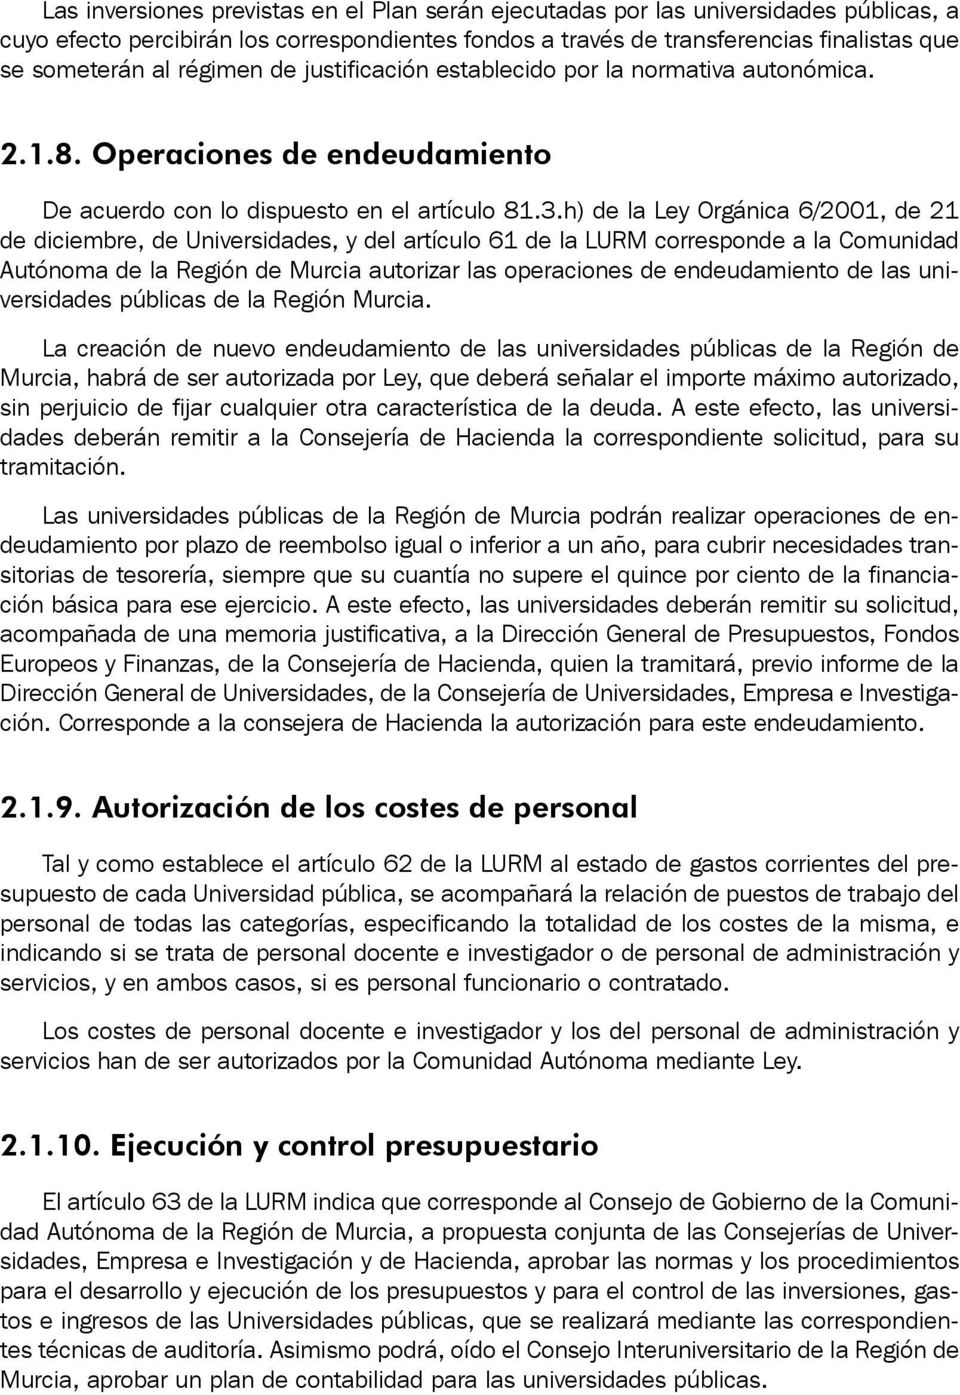 h) de la Ley Orgánica 6/2001, de 21 de diciembre, de Universidades, y del artículo 61 de la LURM corresponde a la Comunidad Autónoma de la Región de Murcia autorizar las operaciones de endeudamiento